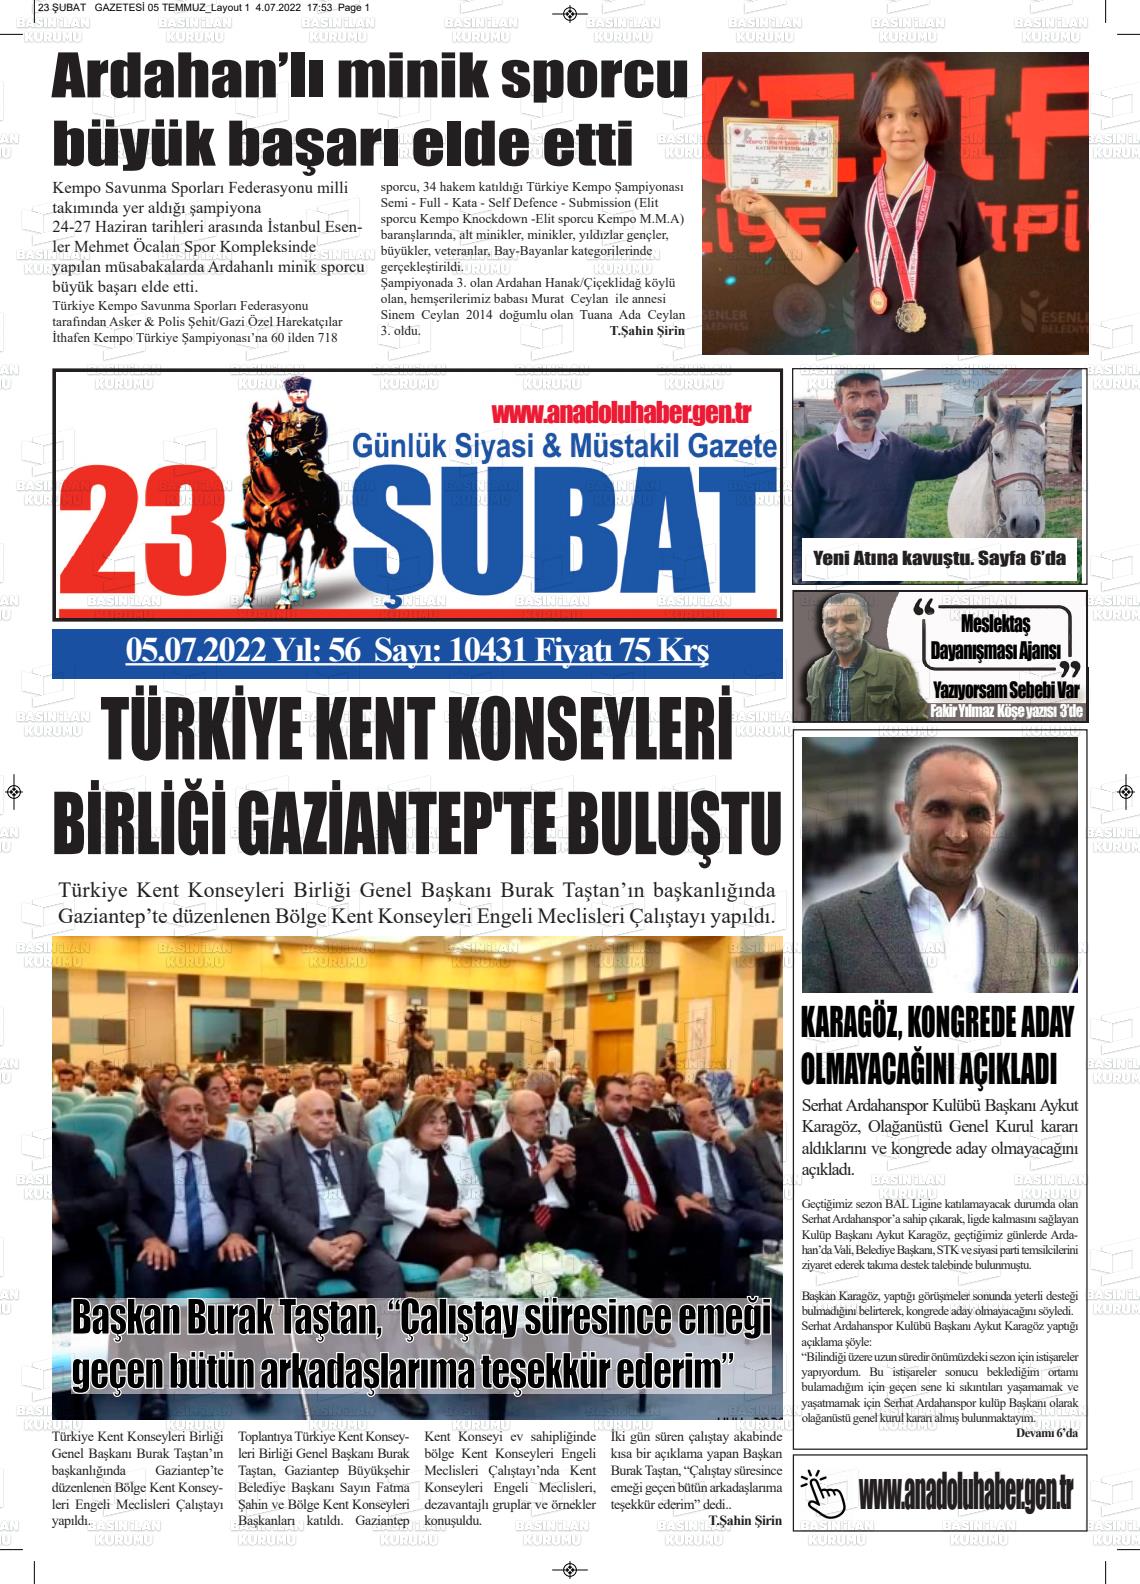 05 Temmuz 2022 23 Şubat Gazete Manşeti